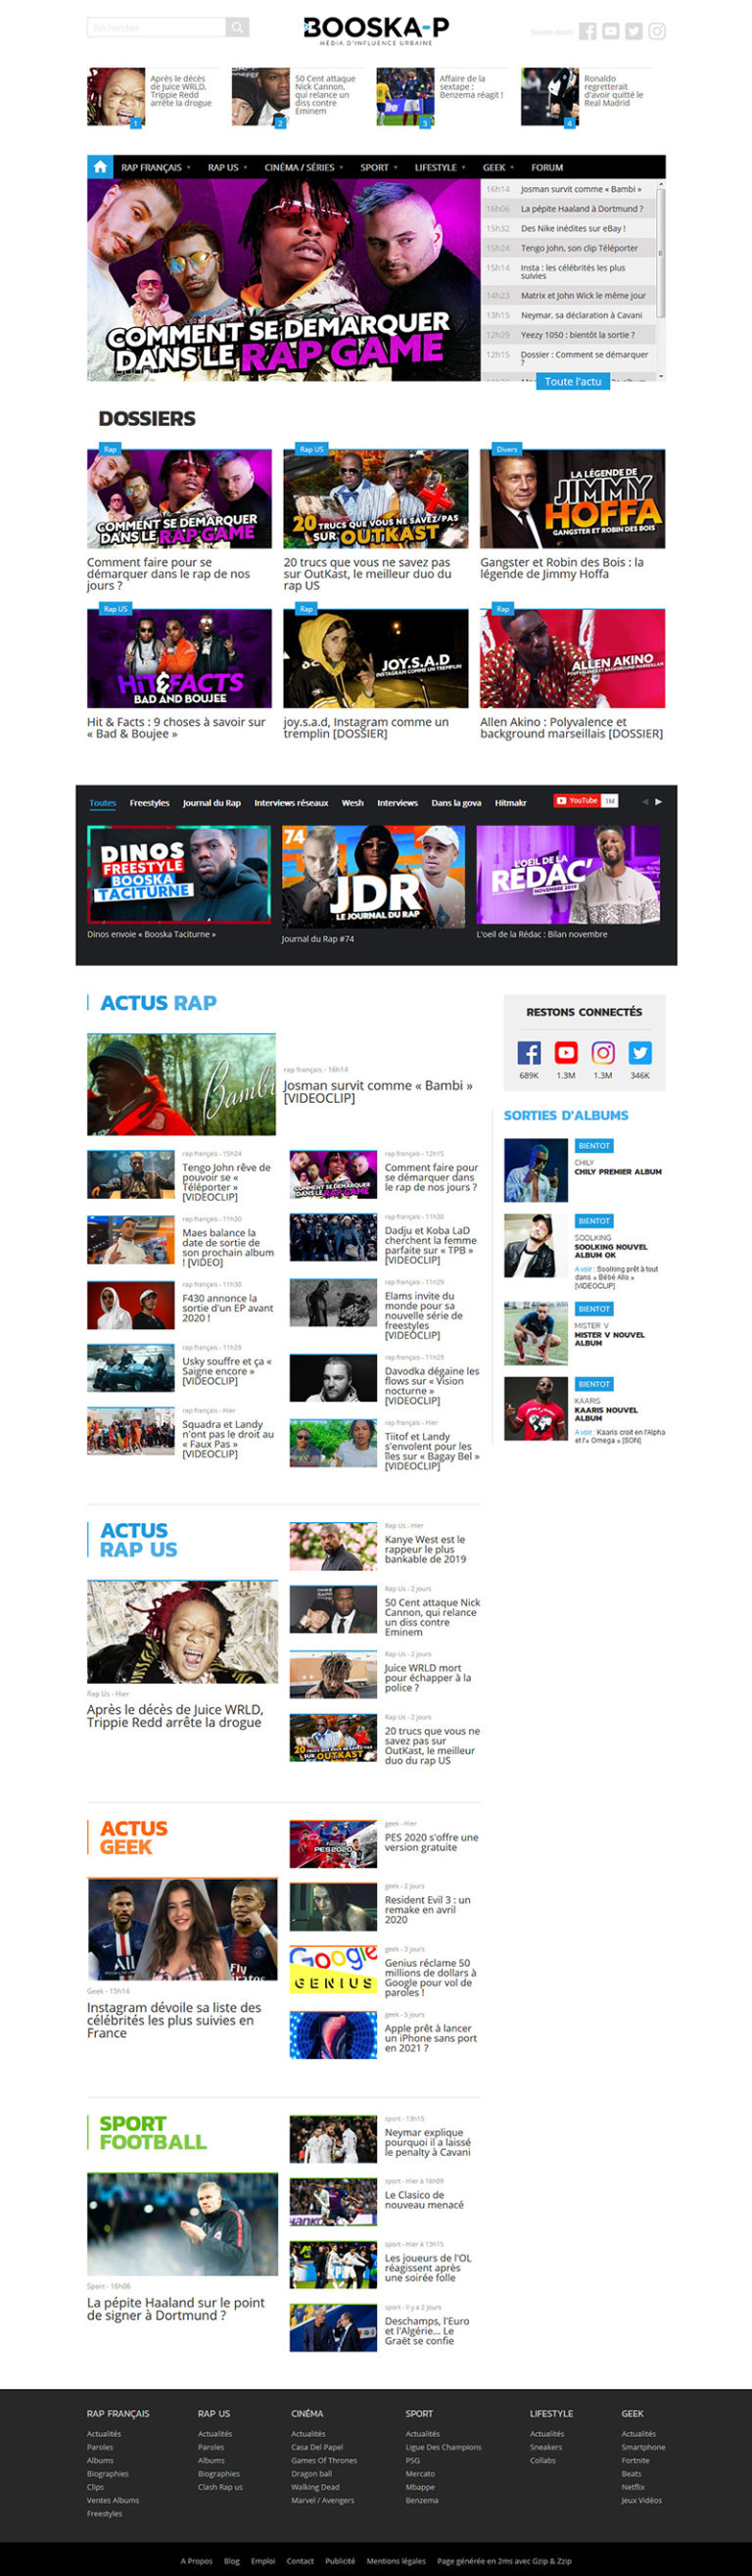 booska-p site internet de rap et hip hop